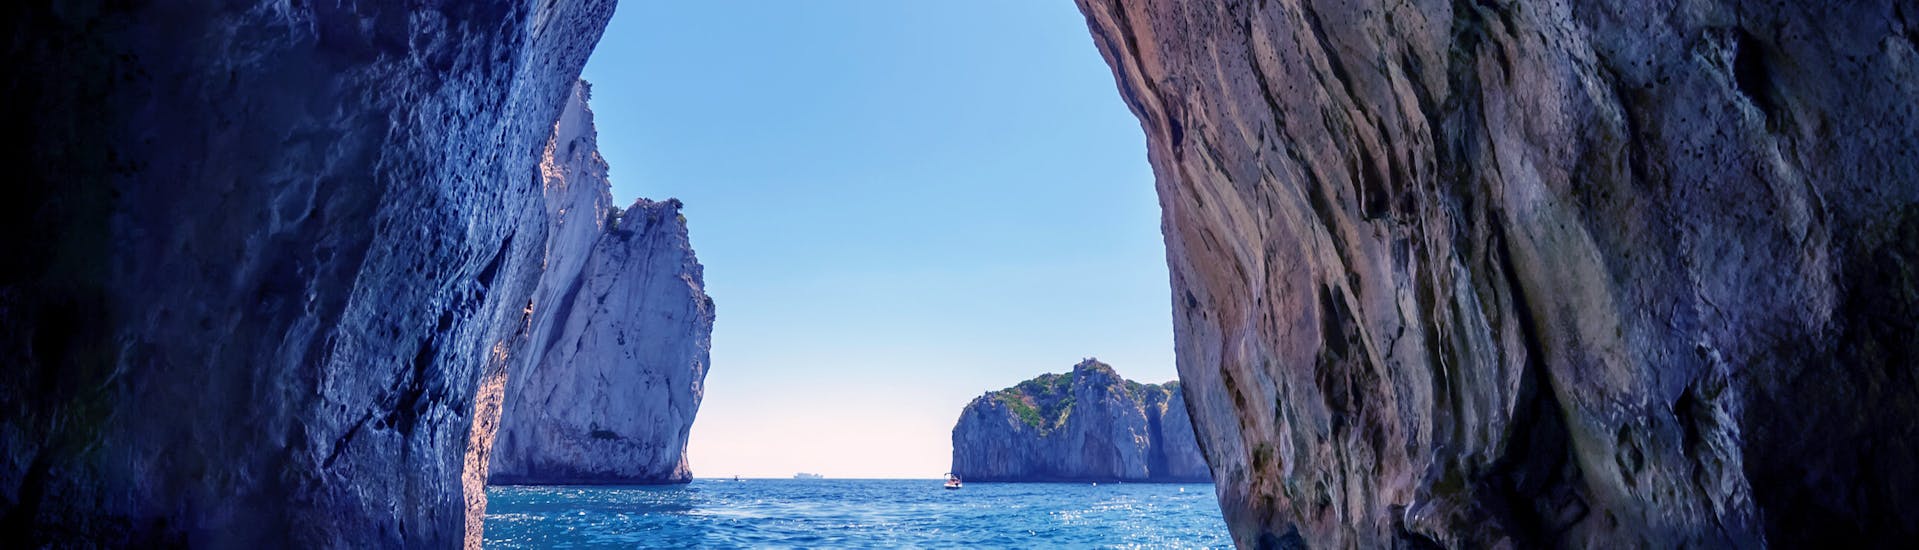 Vista della Grotta Azzurra durante la Gita in barca alla Grotta Azzurra e Capri con snorkeling con Giuliani Charter Sorrento.